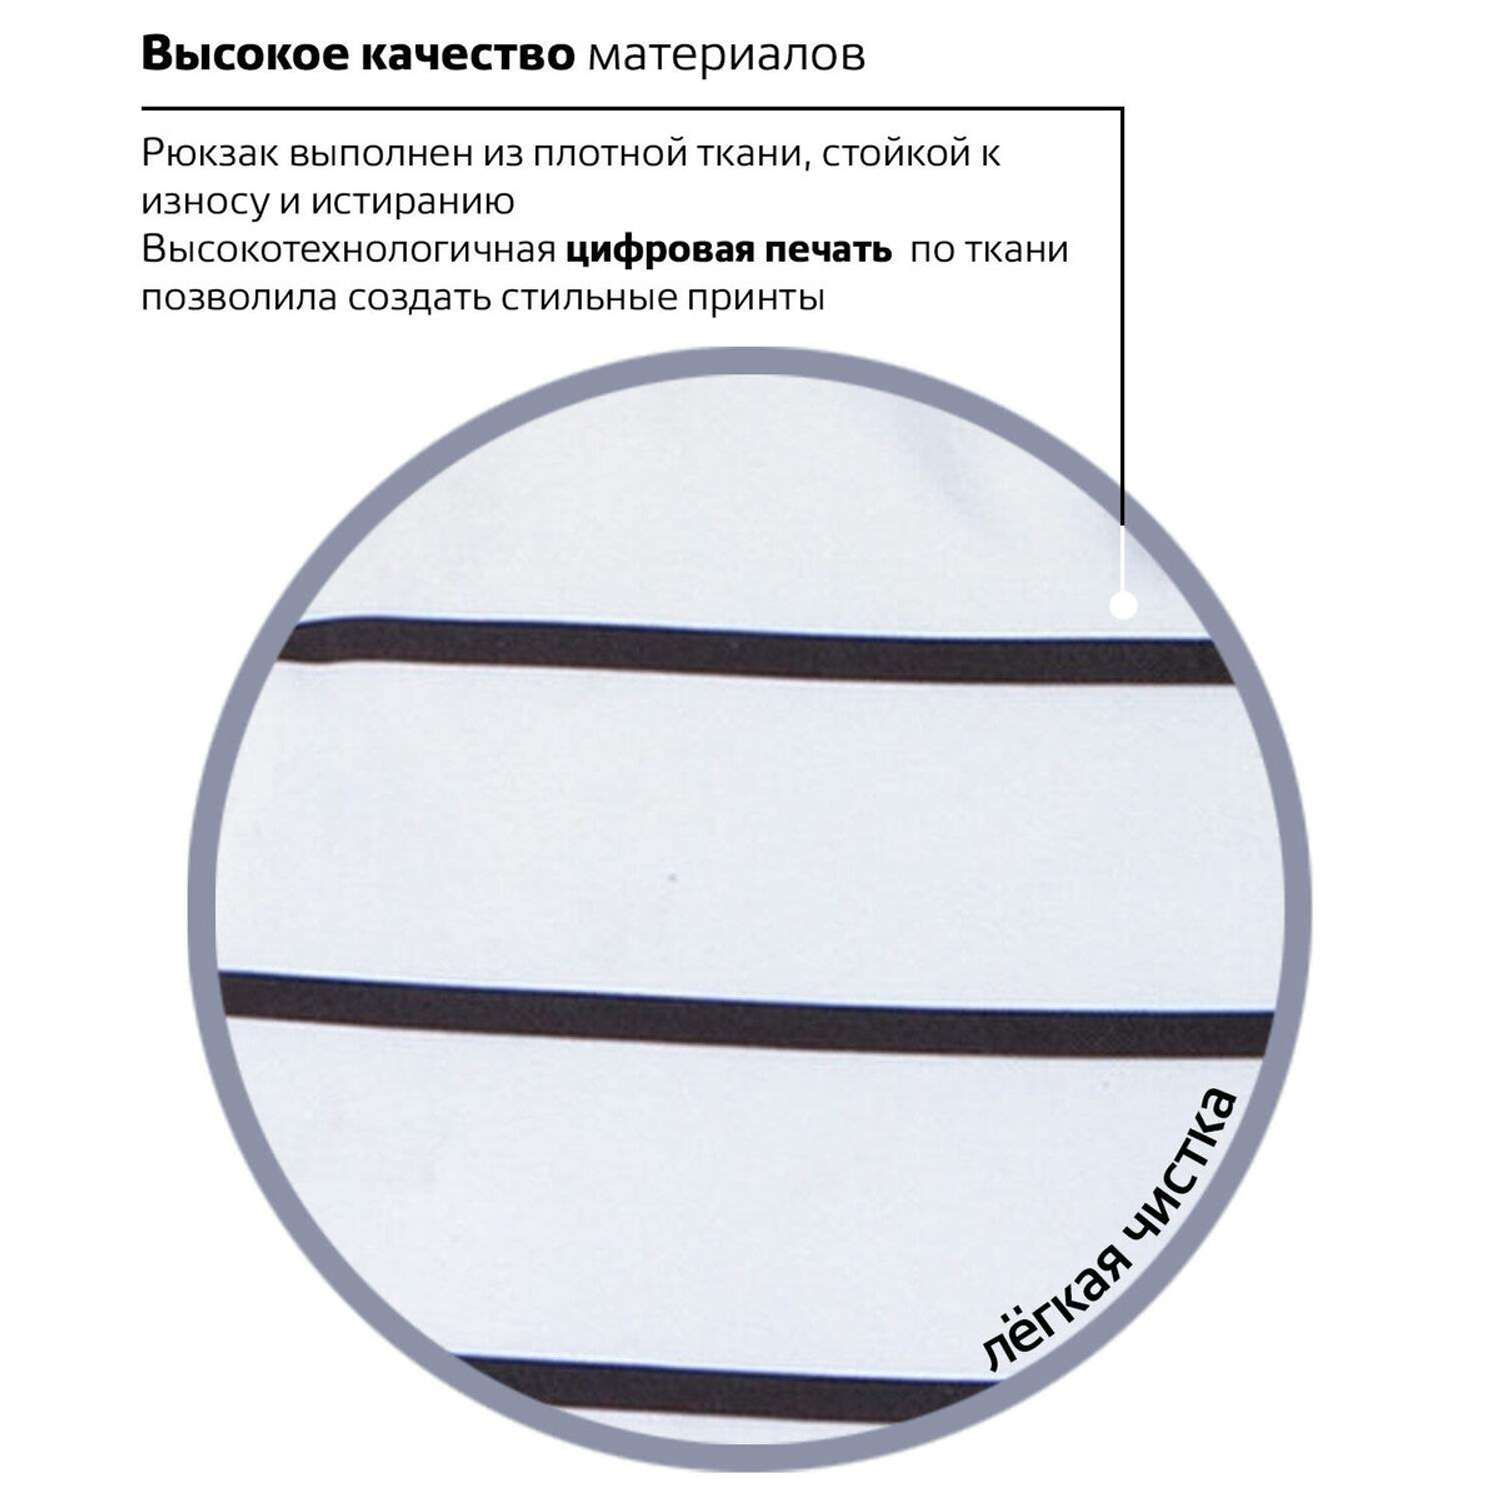 Рюкзак Brauberg универсальный сити-формат белый в полоску - фото 8